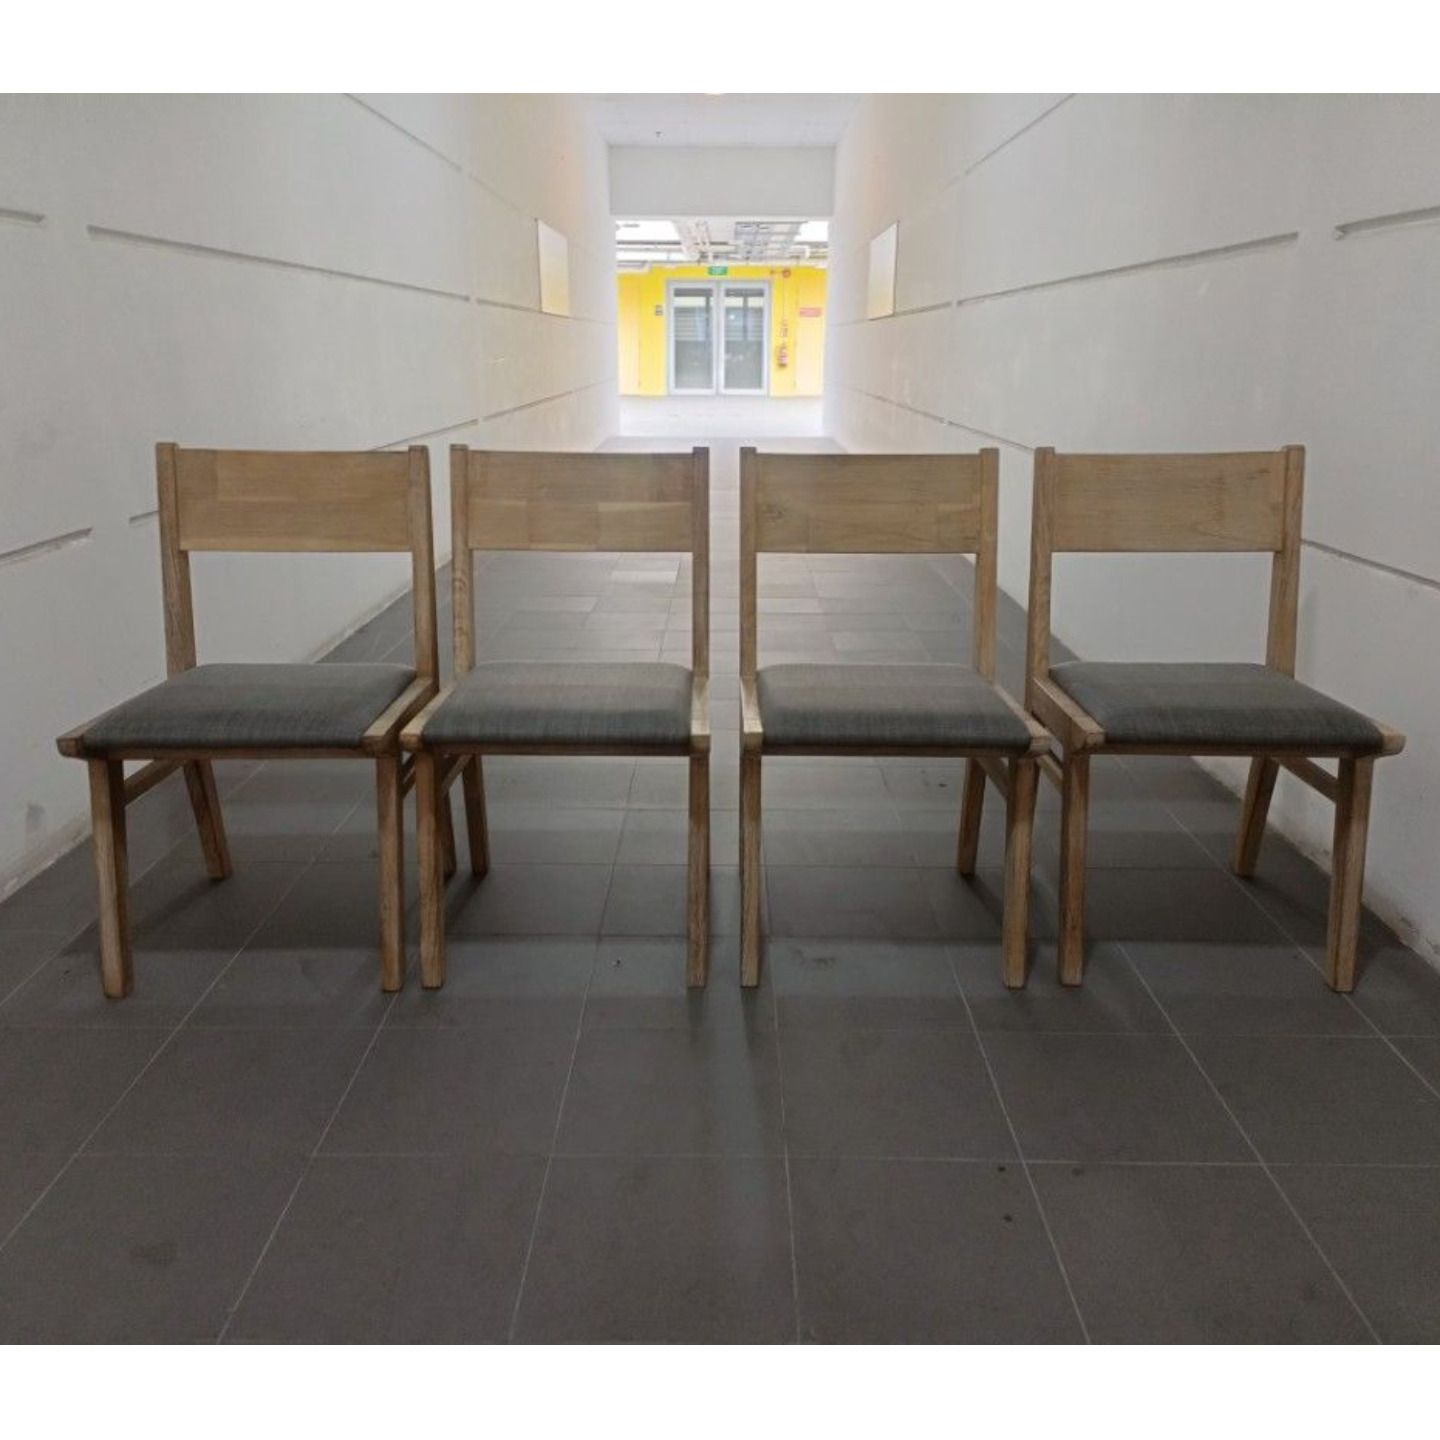 4 x MORGANNA Acacia Wood Dining Chairs